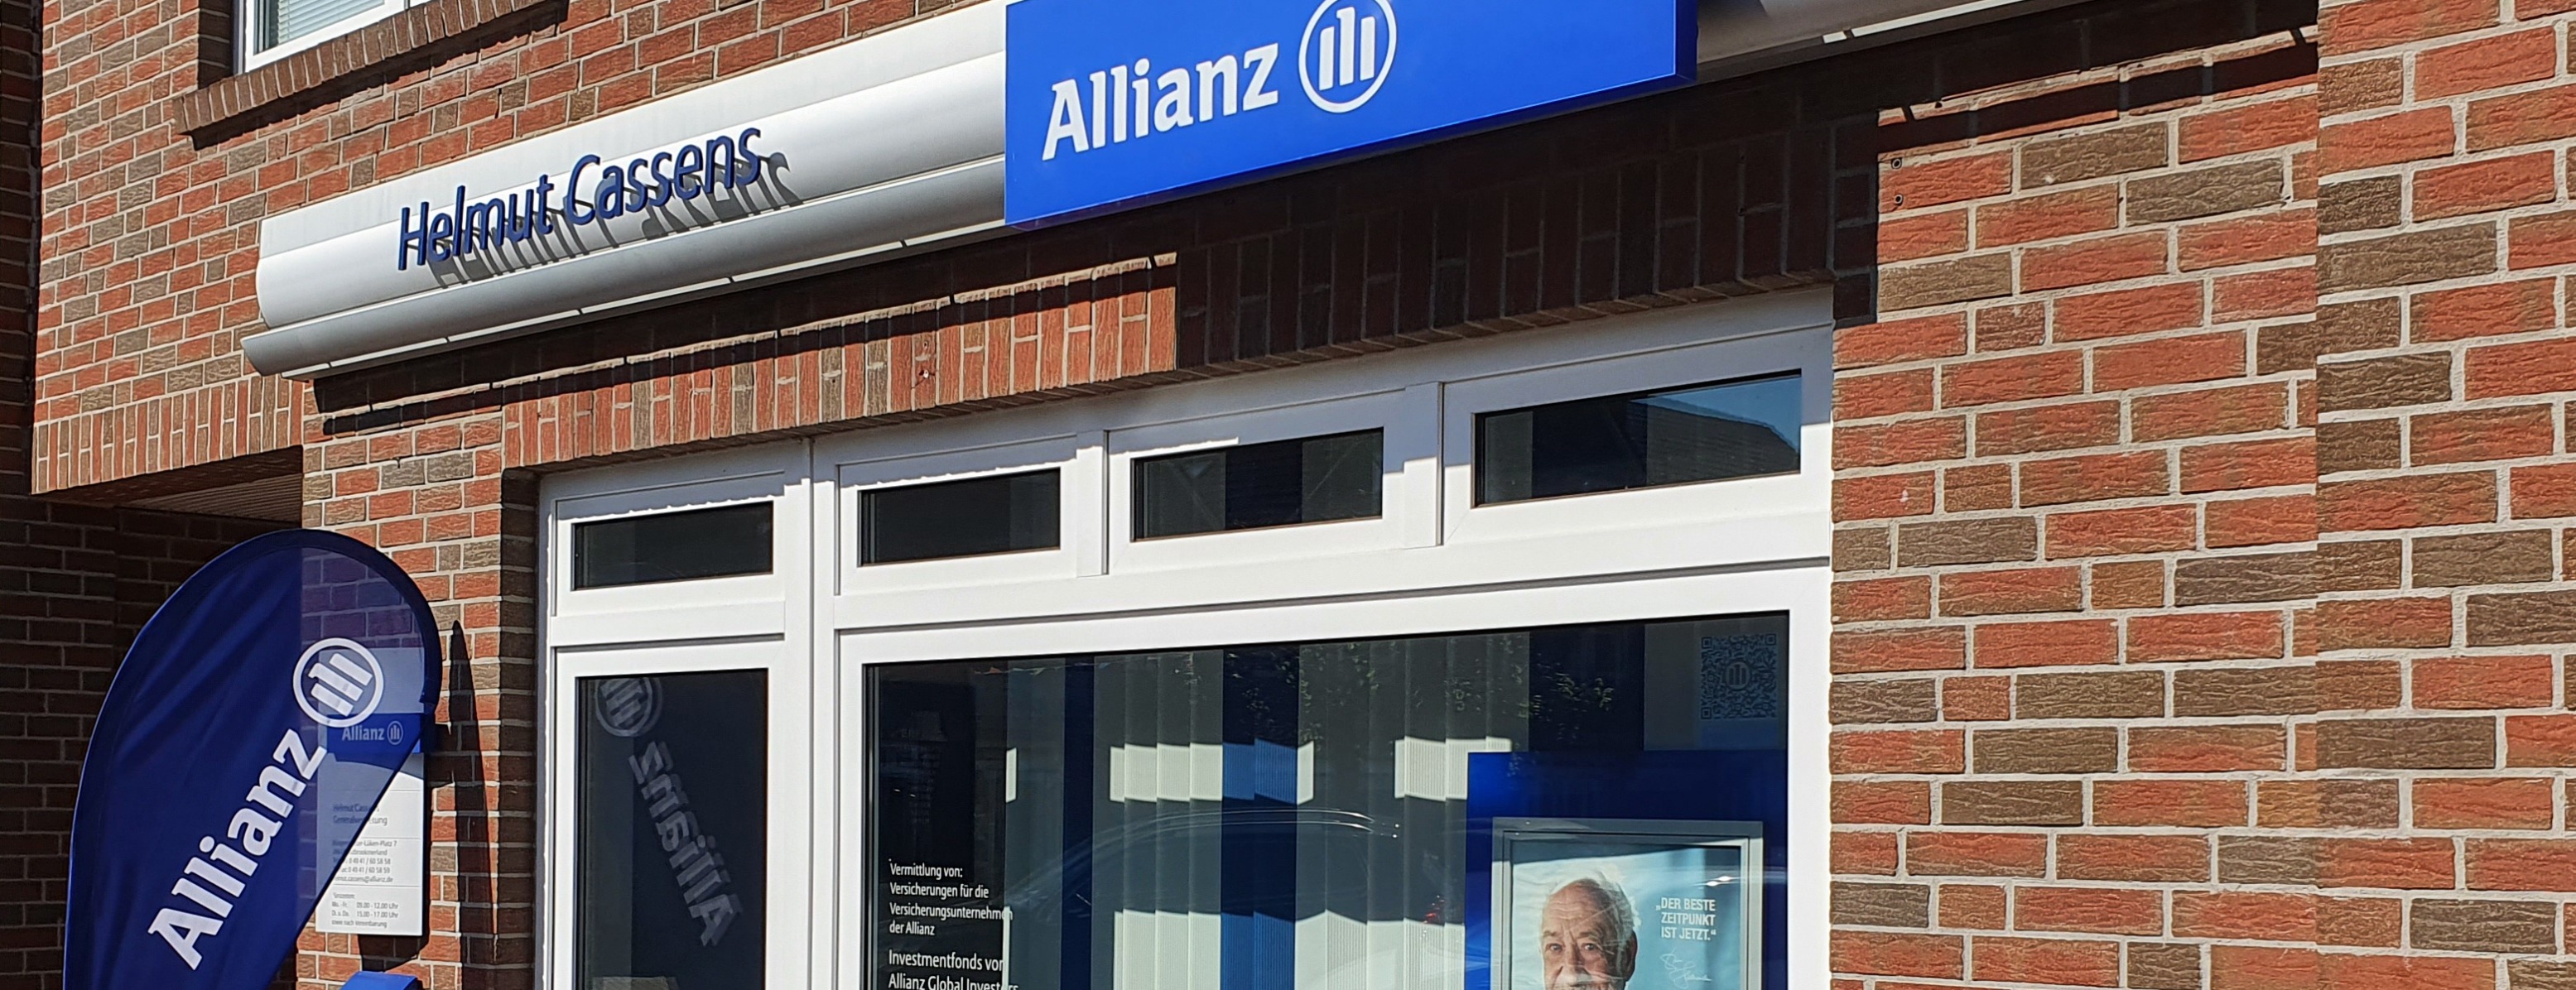 Allianz Versicherung Helmut Cassens Südbrookmerland - Titelbild